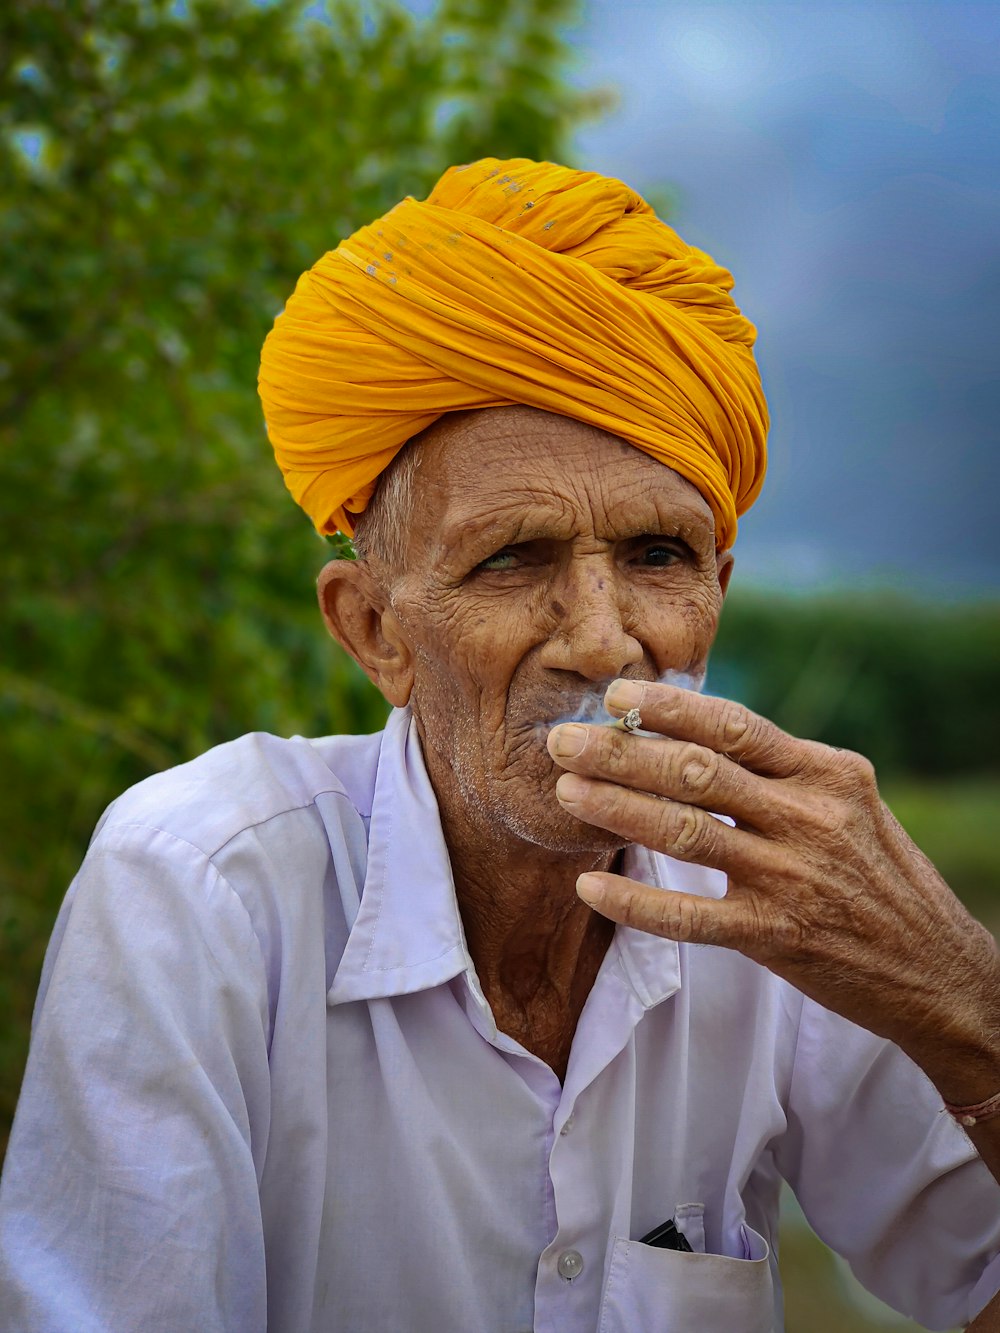 un homme avec un turban jaune fumant une cigarette